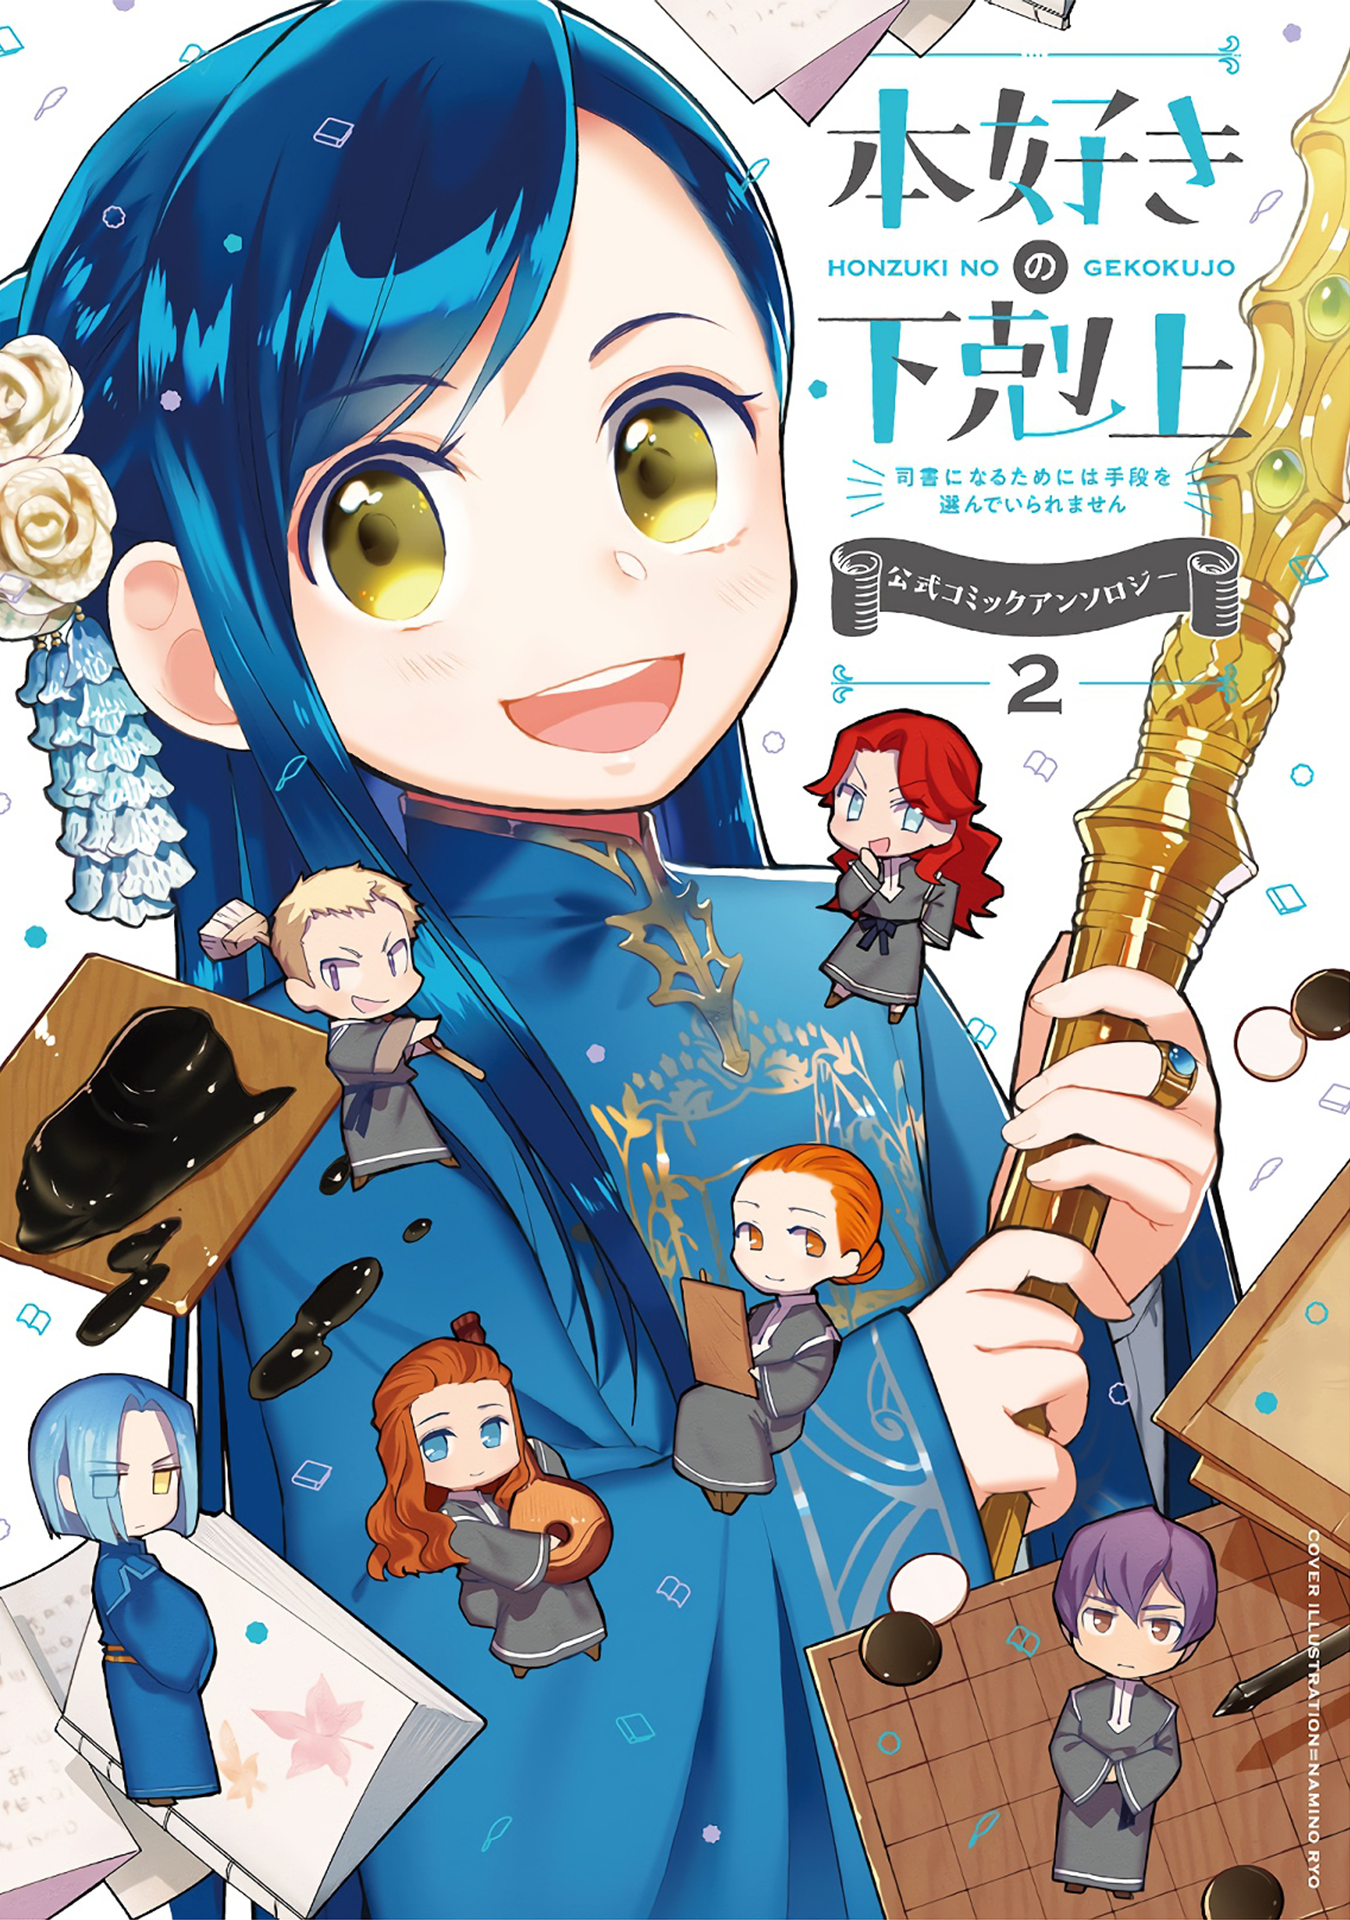 Ascendance of a Bookworm: Koushiki Comic Anthology Manga